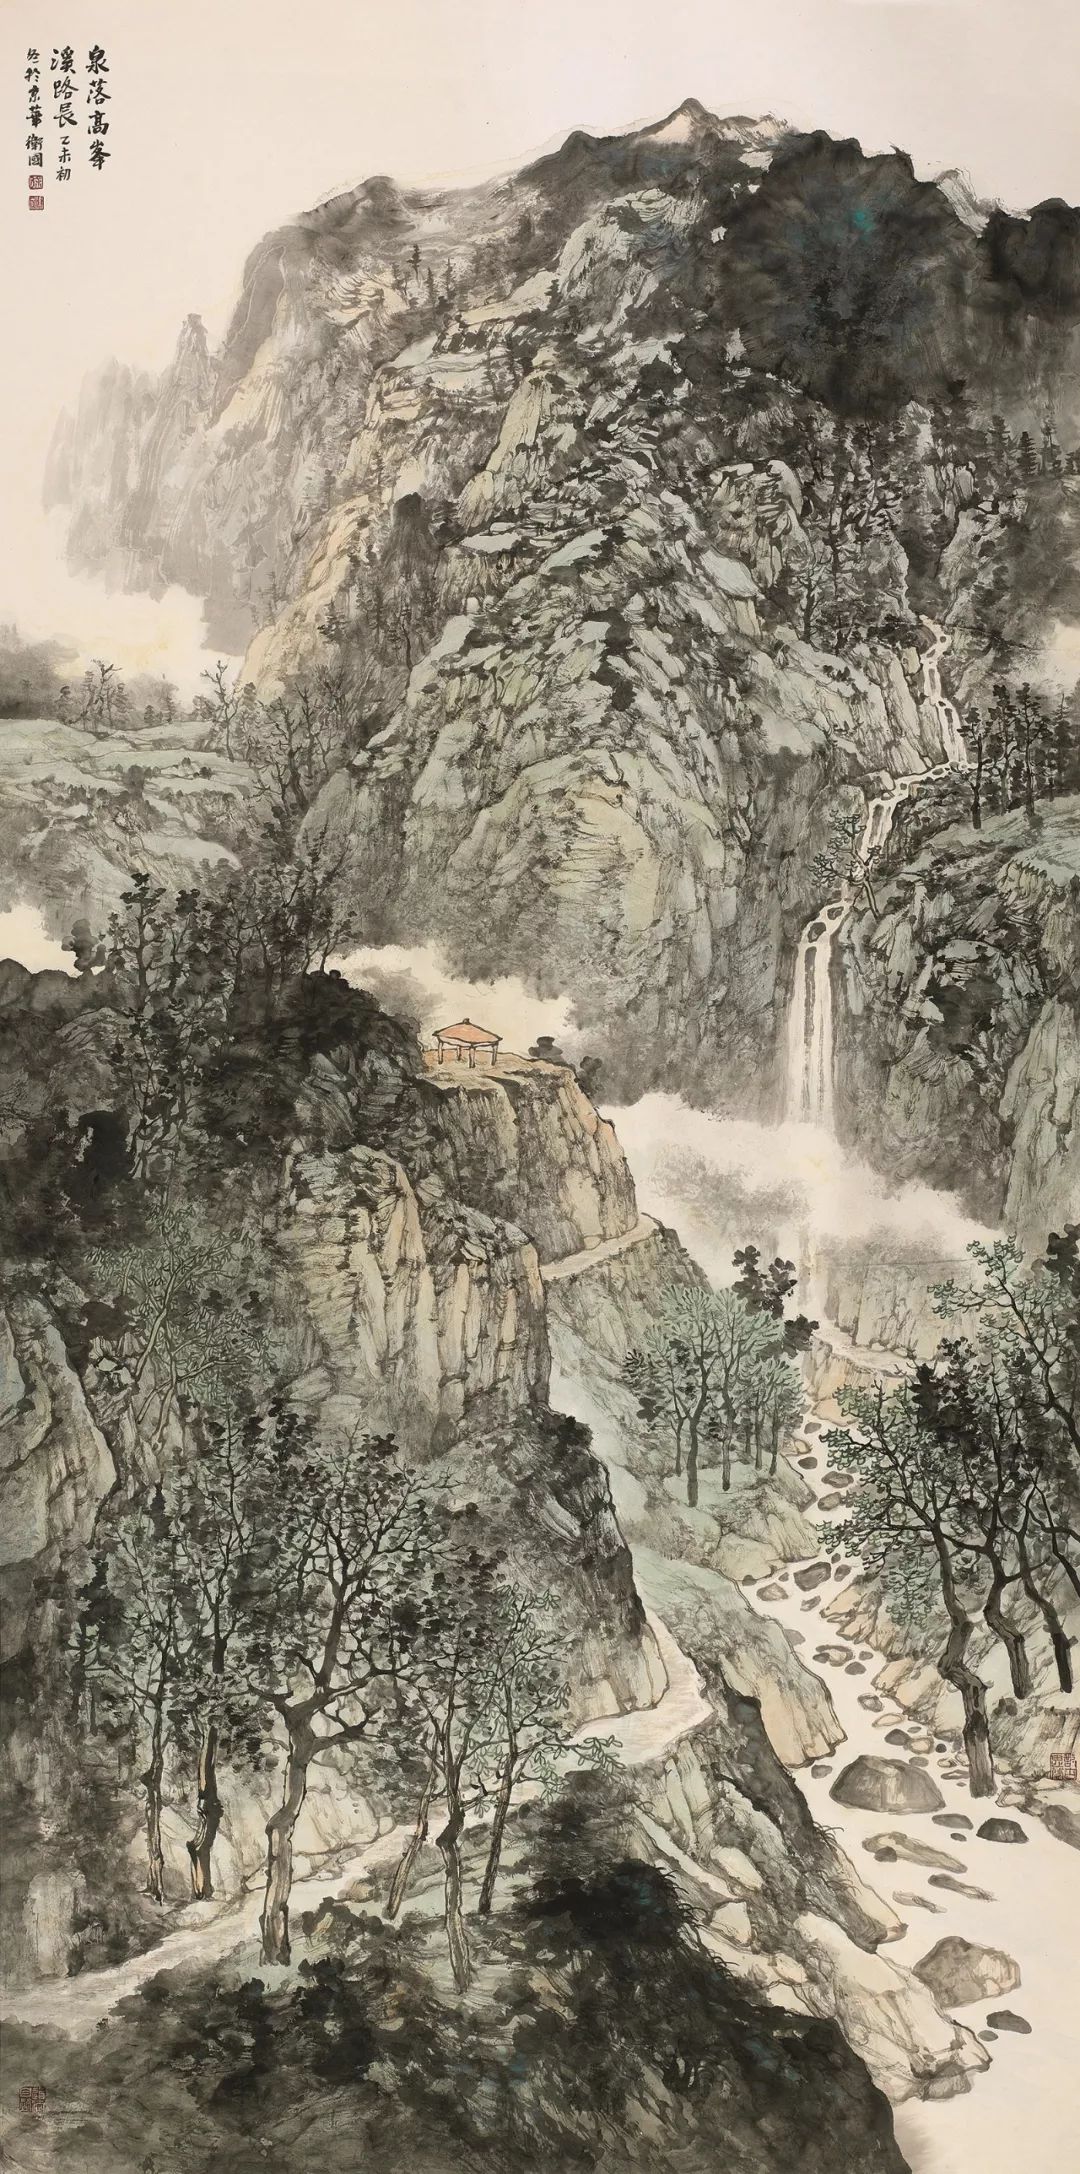 山外人间 出古入今的山水家园:徐卫国山水画作品在北京画院美术馆展出